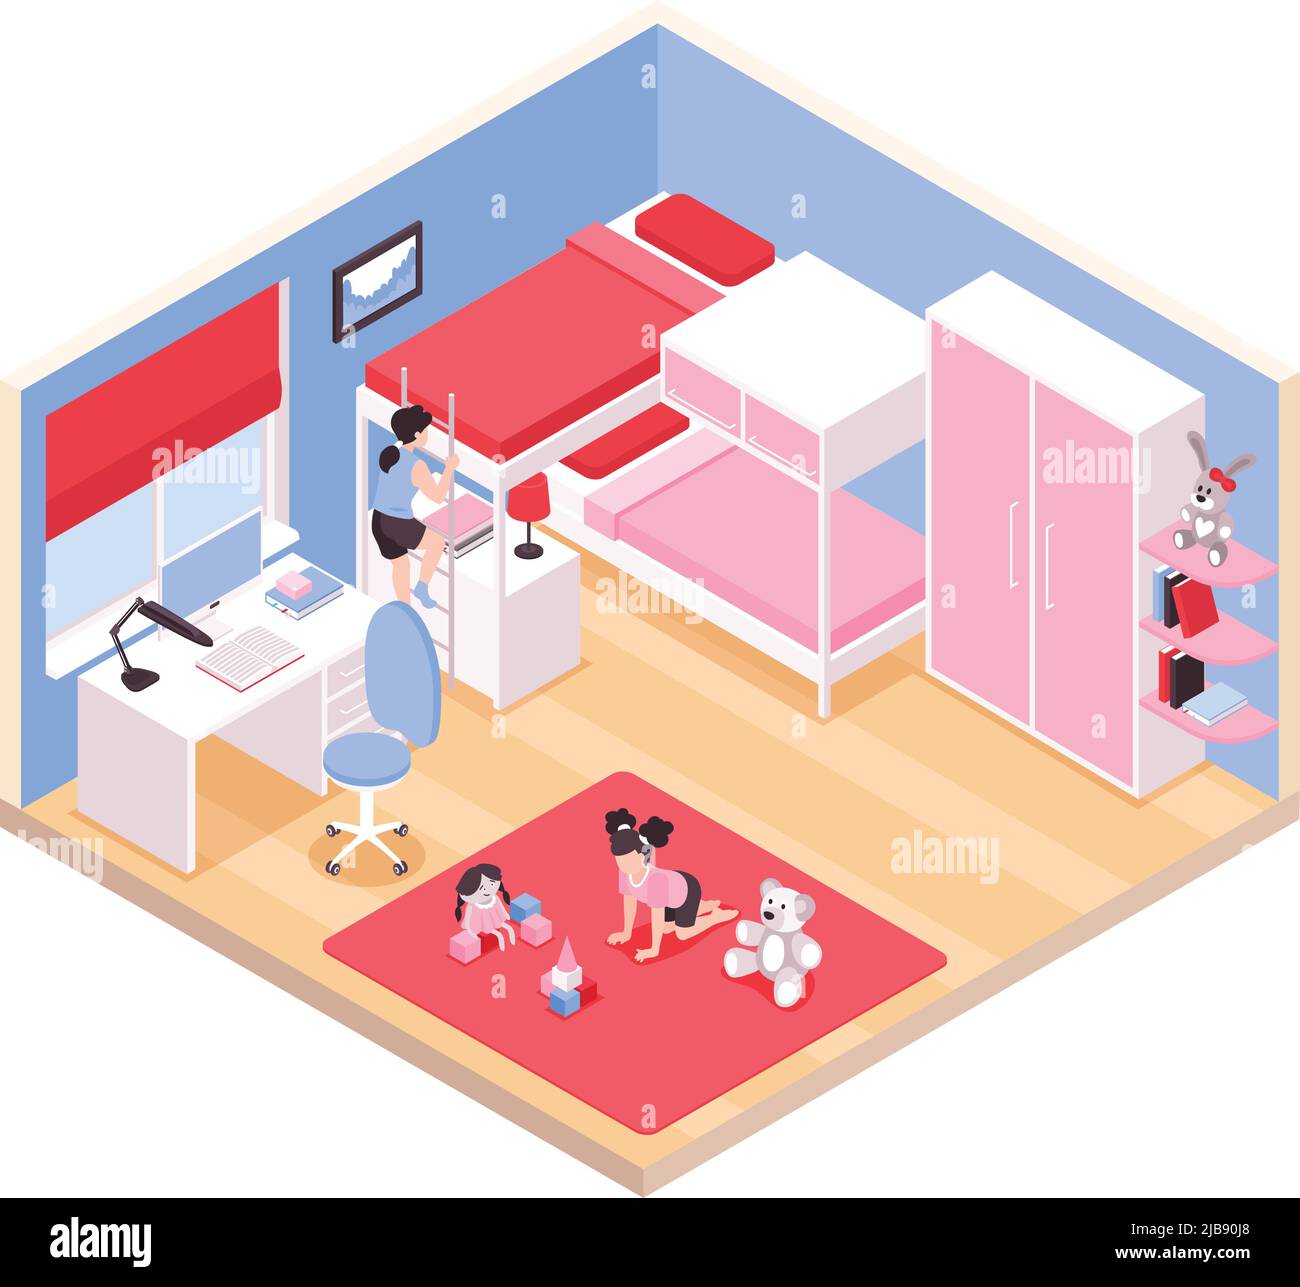 Kinder Mädchen Zimmer Interieur isometrische Ansicht mit rotem Teppich Etagenbett rosa Kleiderschrank Schreibtisch Spielzeug Vektor Illustration Stock Vektor